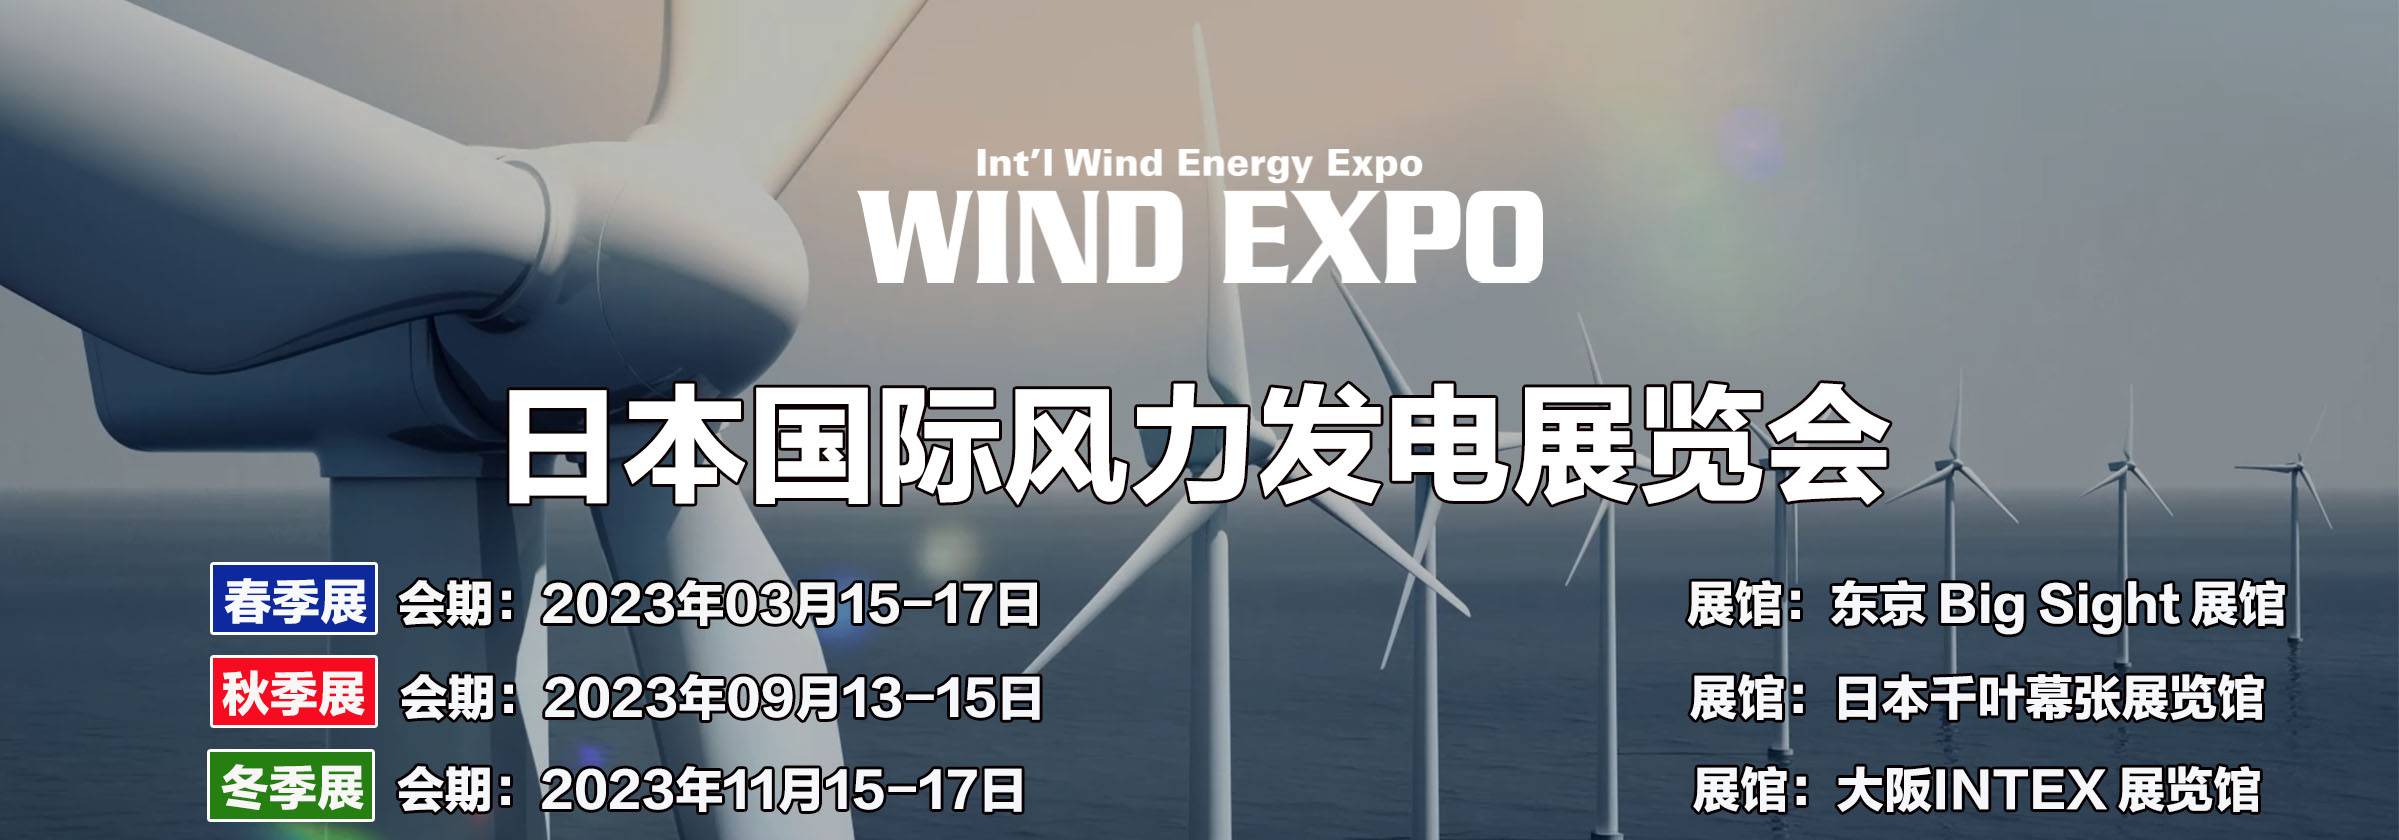 日本风力发电展时间.jpg